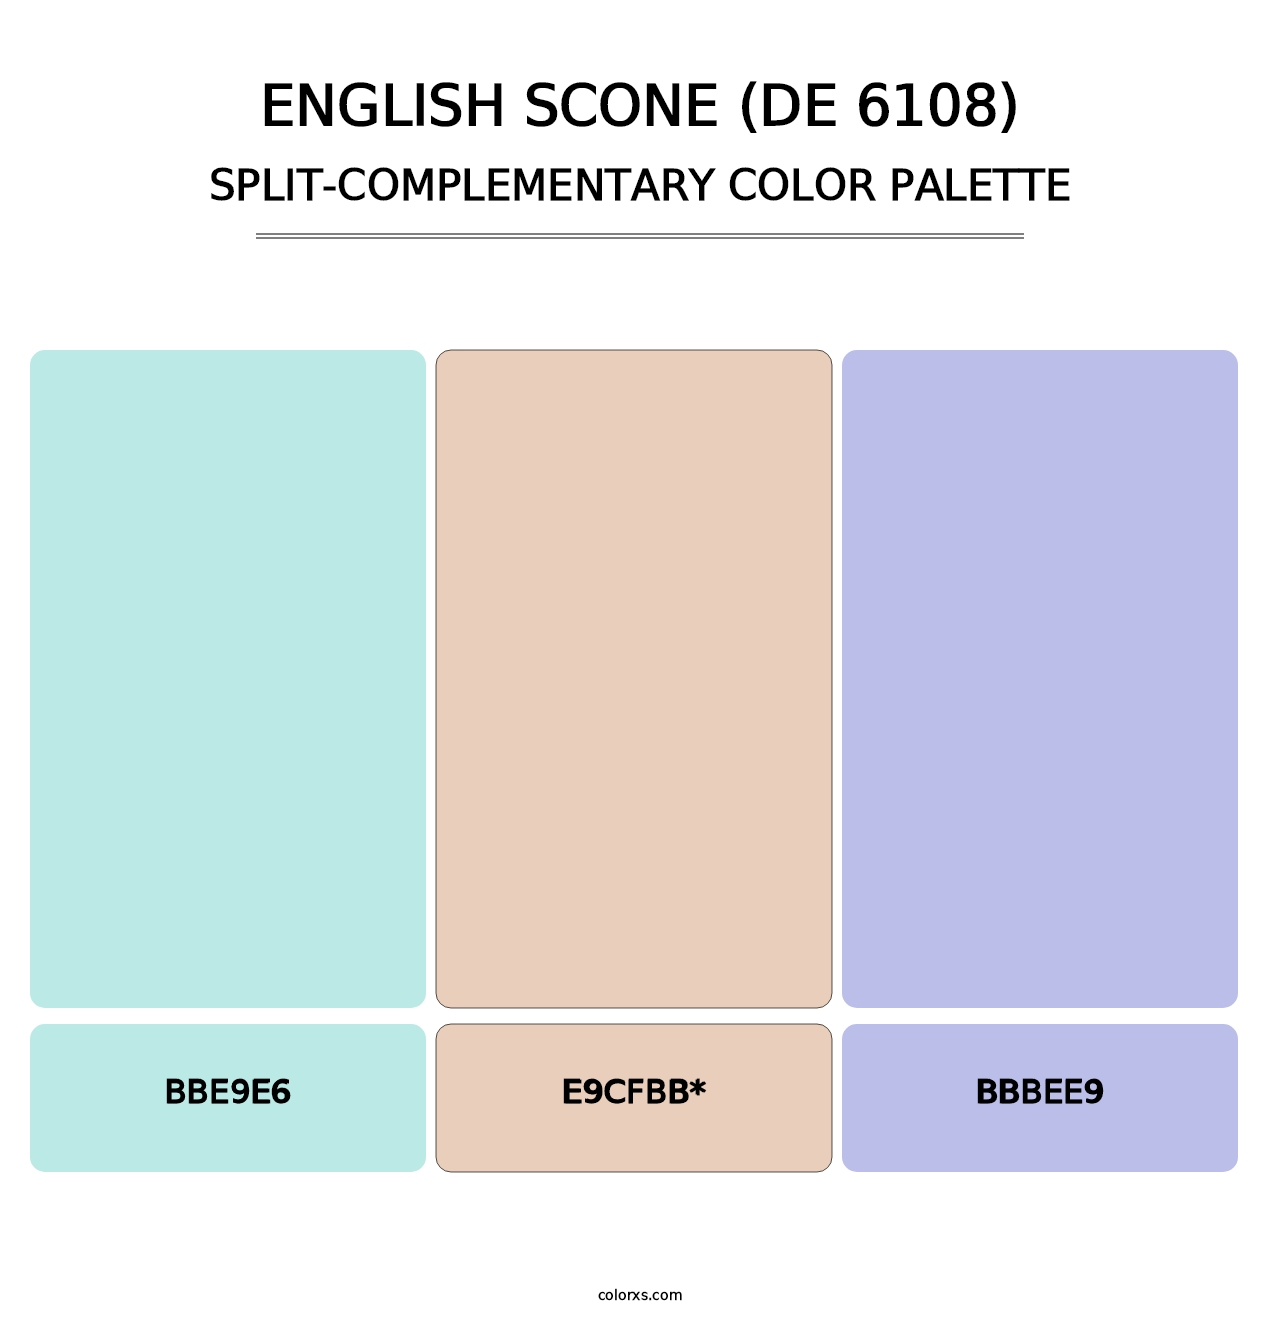 English Scone (DE 6108) - Split-Complementary Color Palette